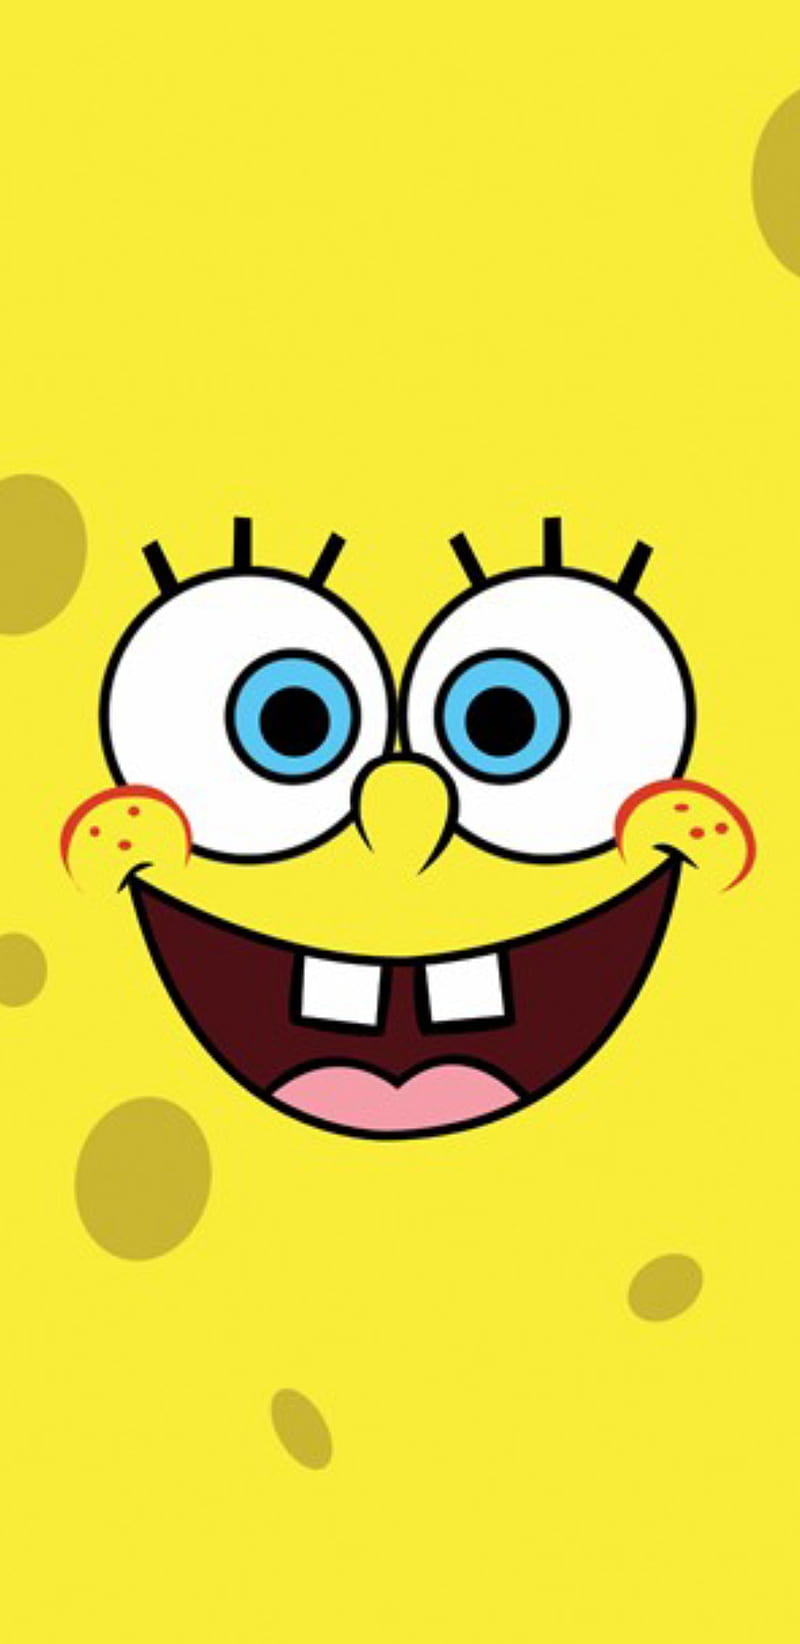 Hình nền Sponge Bob đầy màu sắc và vui nhộn sẽ làm cho điện thoại của bạn trở nên trẻ trung và năng động hơn. Nếu bạn là người yêu thích chú bọt biển đáng yêu này, hãy thử sử dụng hình nền này và cùng cảm nhận niềm vui và sự vui vẻ mà Sponge Bob mang lại.